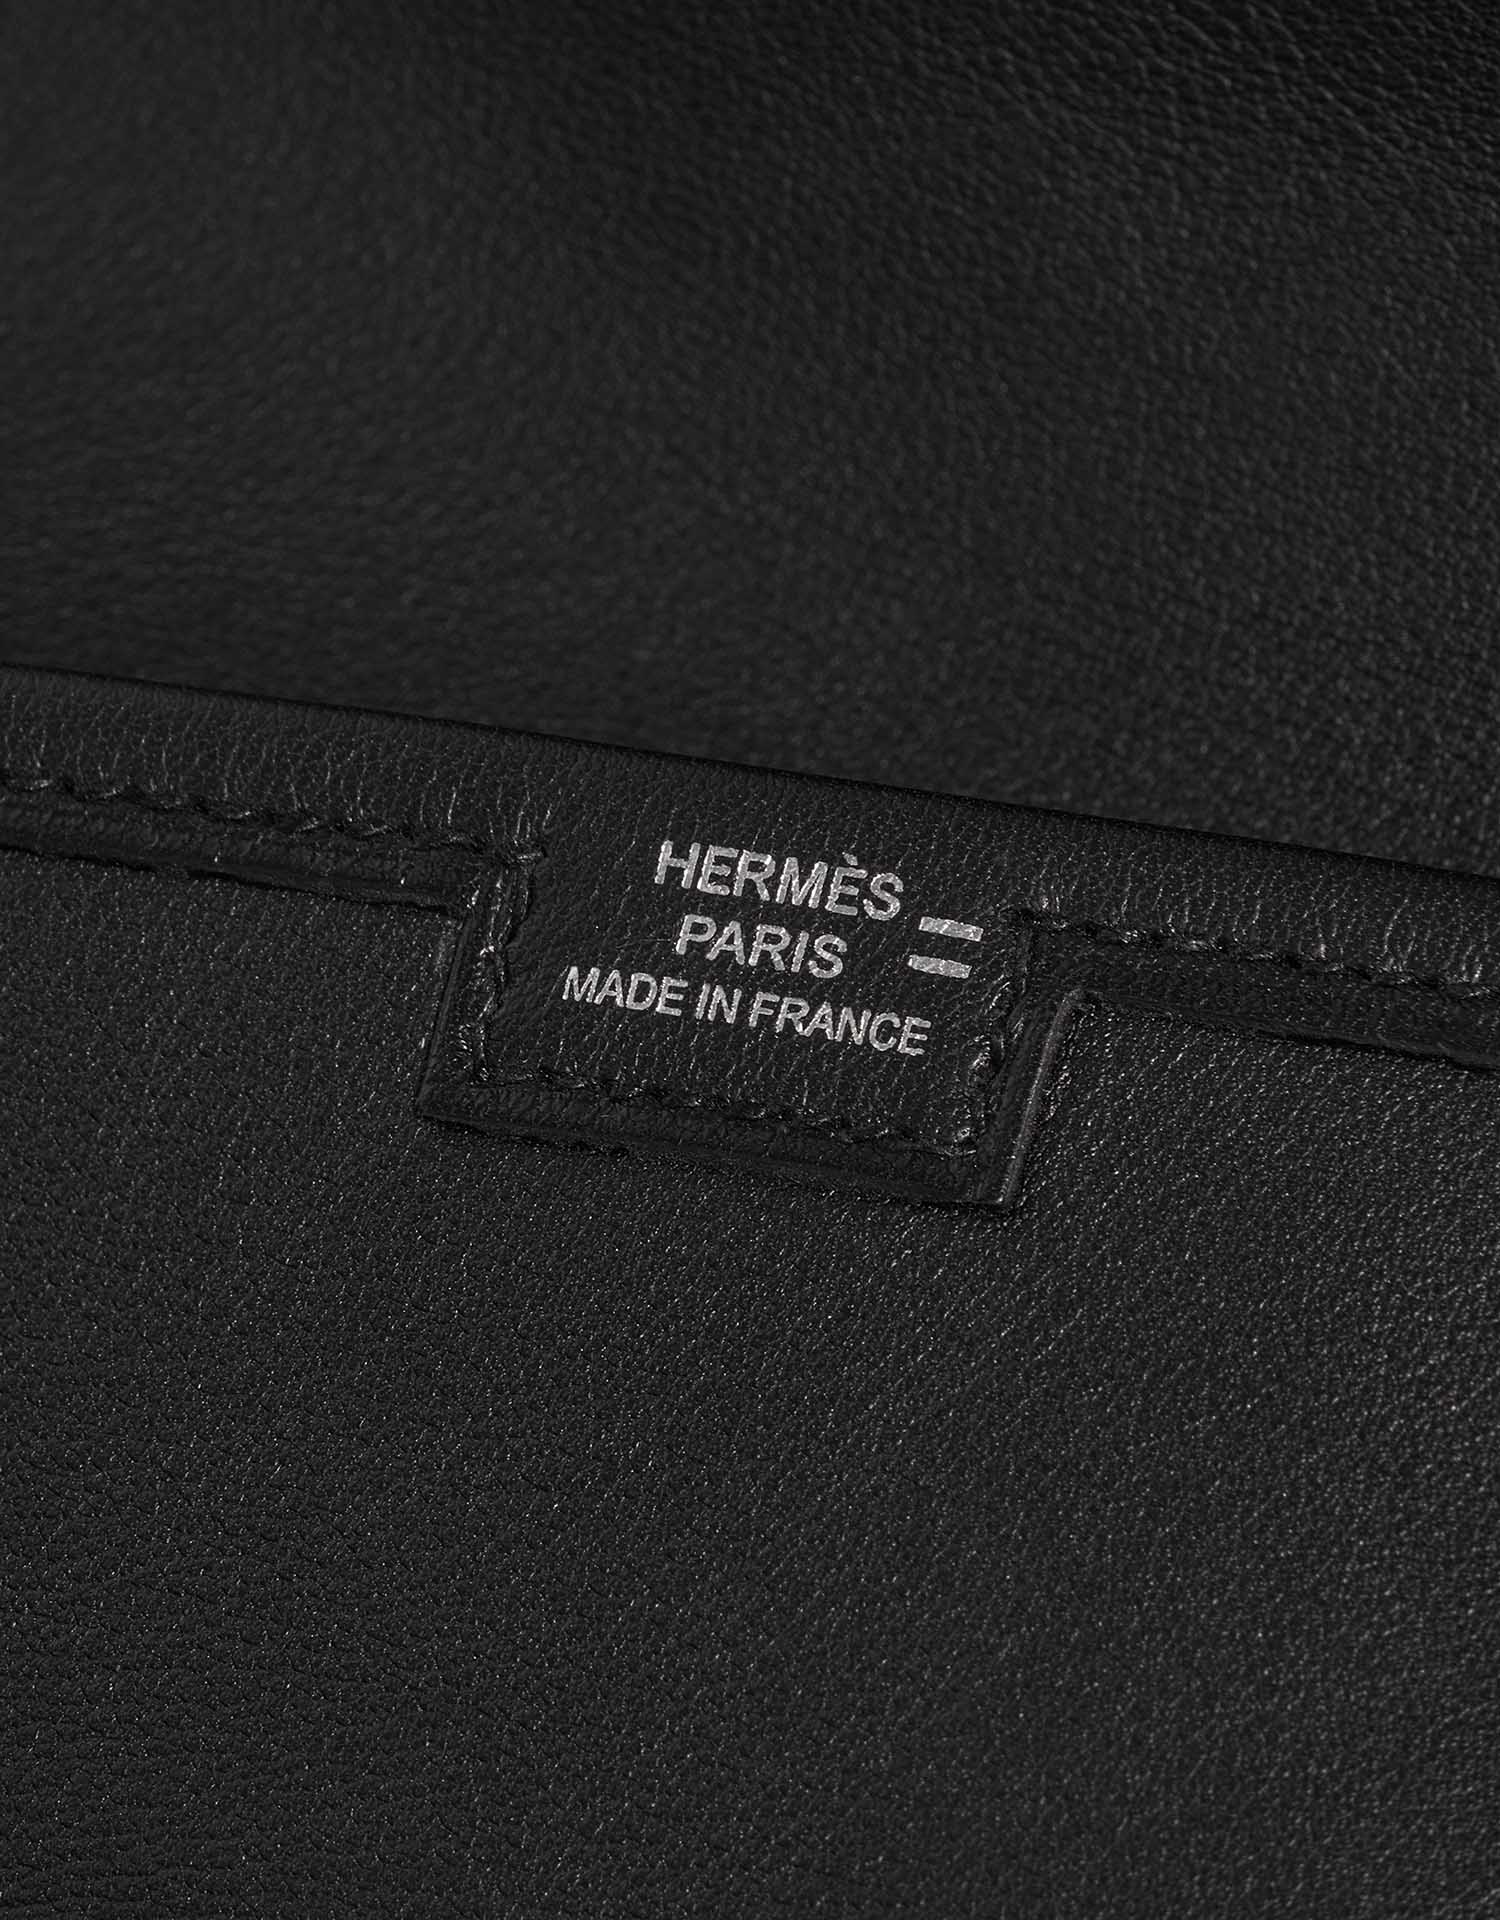 Sac Hermès d'occasion Pochette Jige Salvator lézard / Swift Ombré / Black Black, Brown Logo | Vendez votre sac de créateur sur Saclab.com